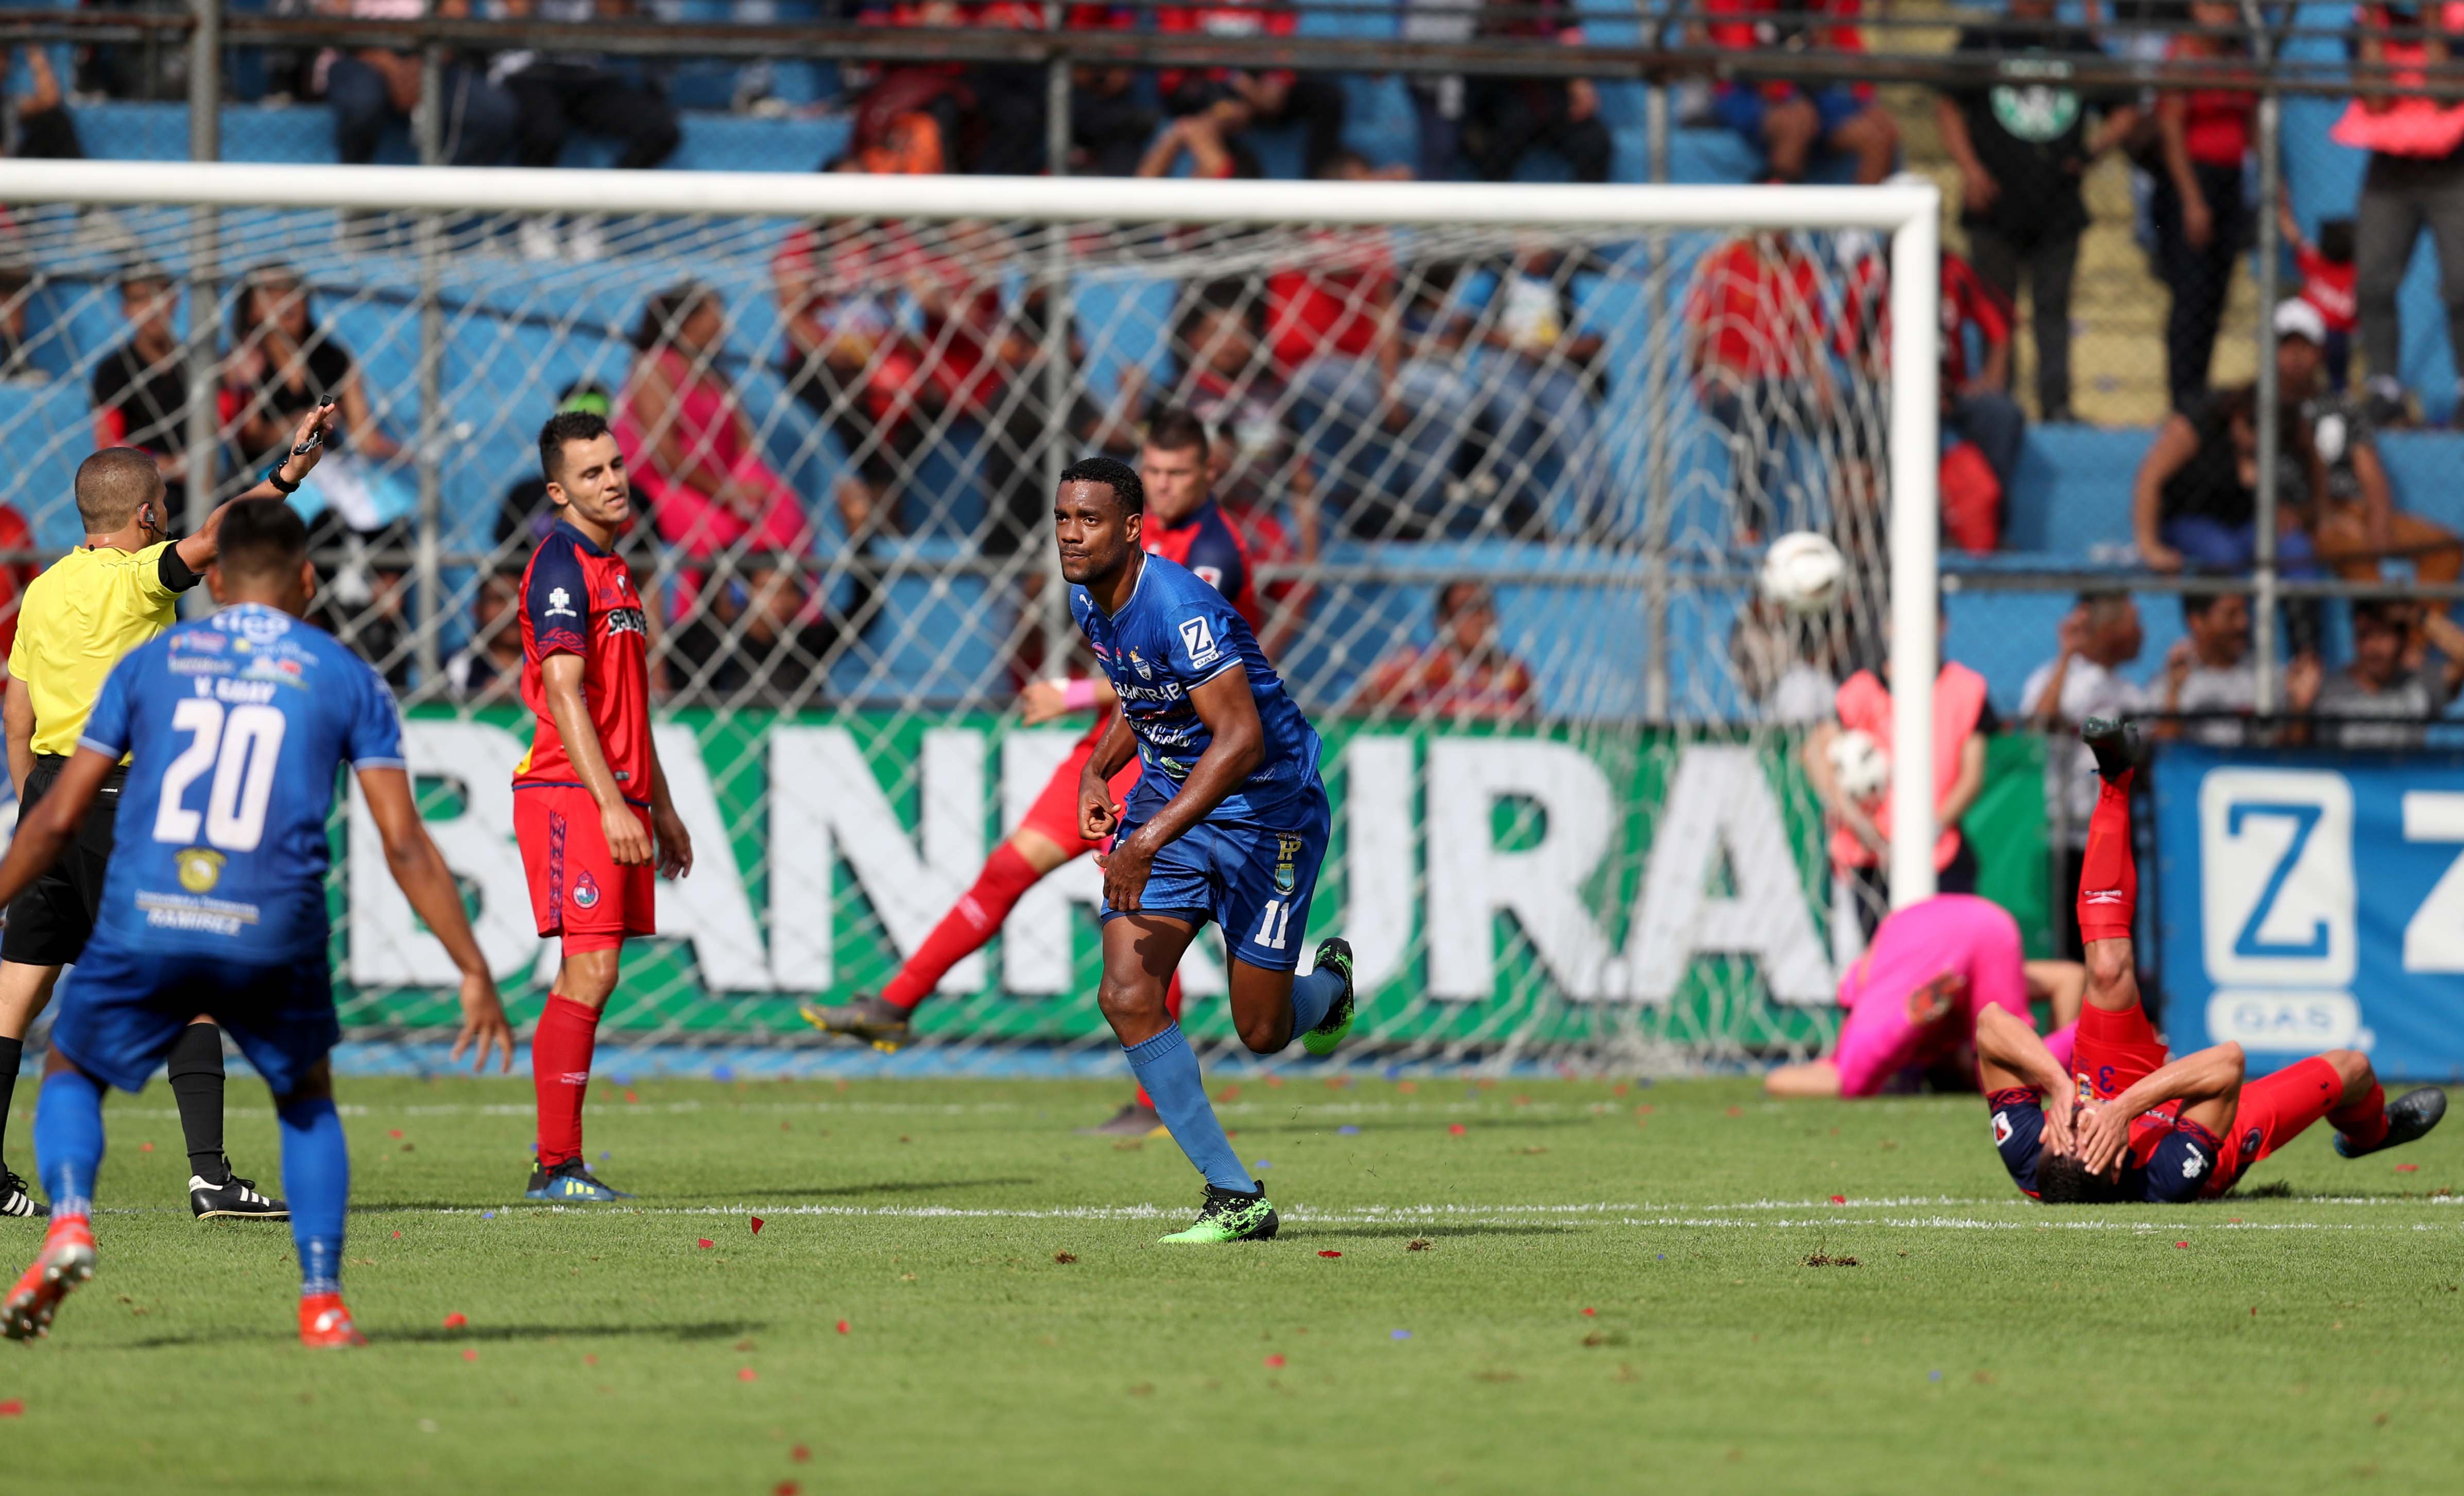 Mitchell (de azul al centro) anotó un golazo en el juego contra Municipal el sábado pasado, en el estadio de El Trébol. (Foto Prensa Libre: Carlos Vicente)